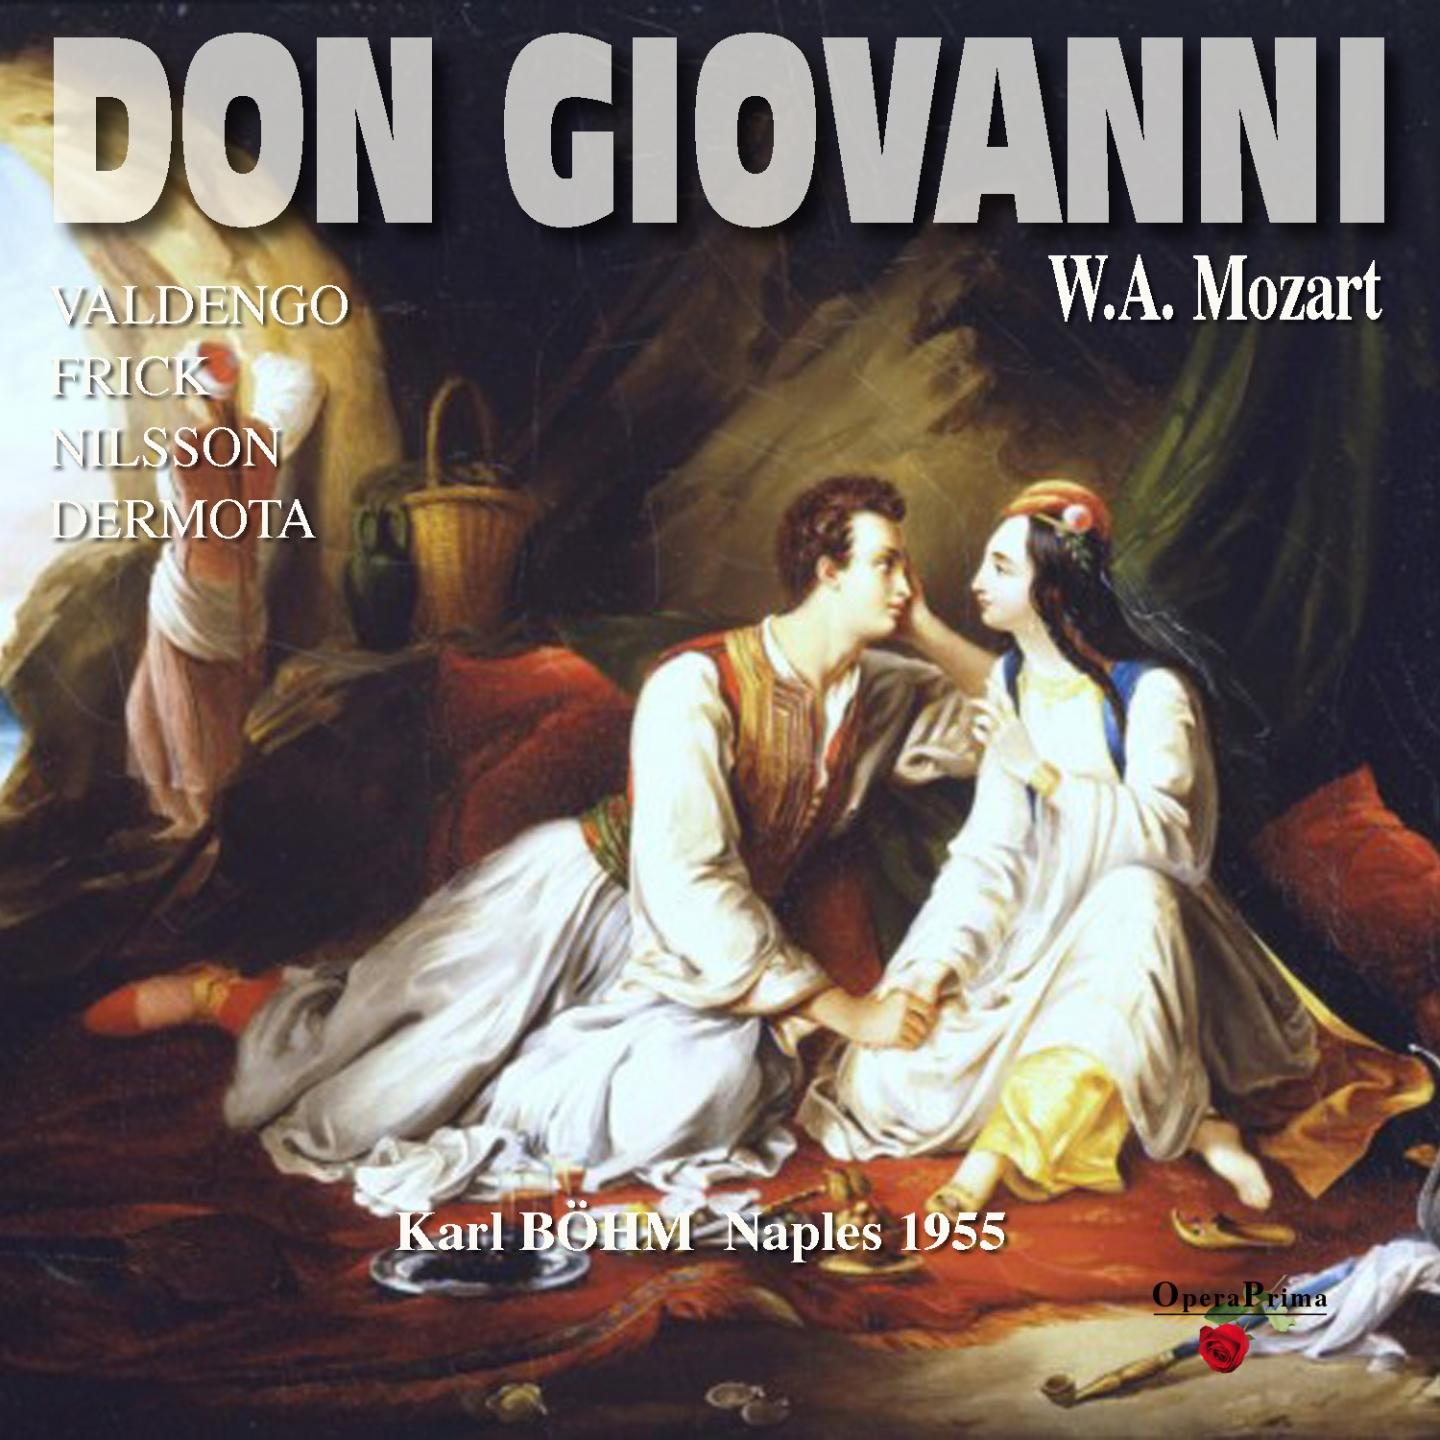 Don Giovanni: Act I - "Ah fuggi il traditore"